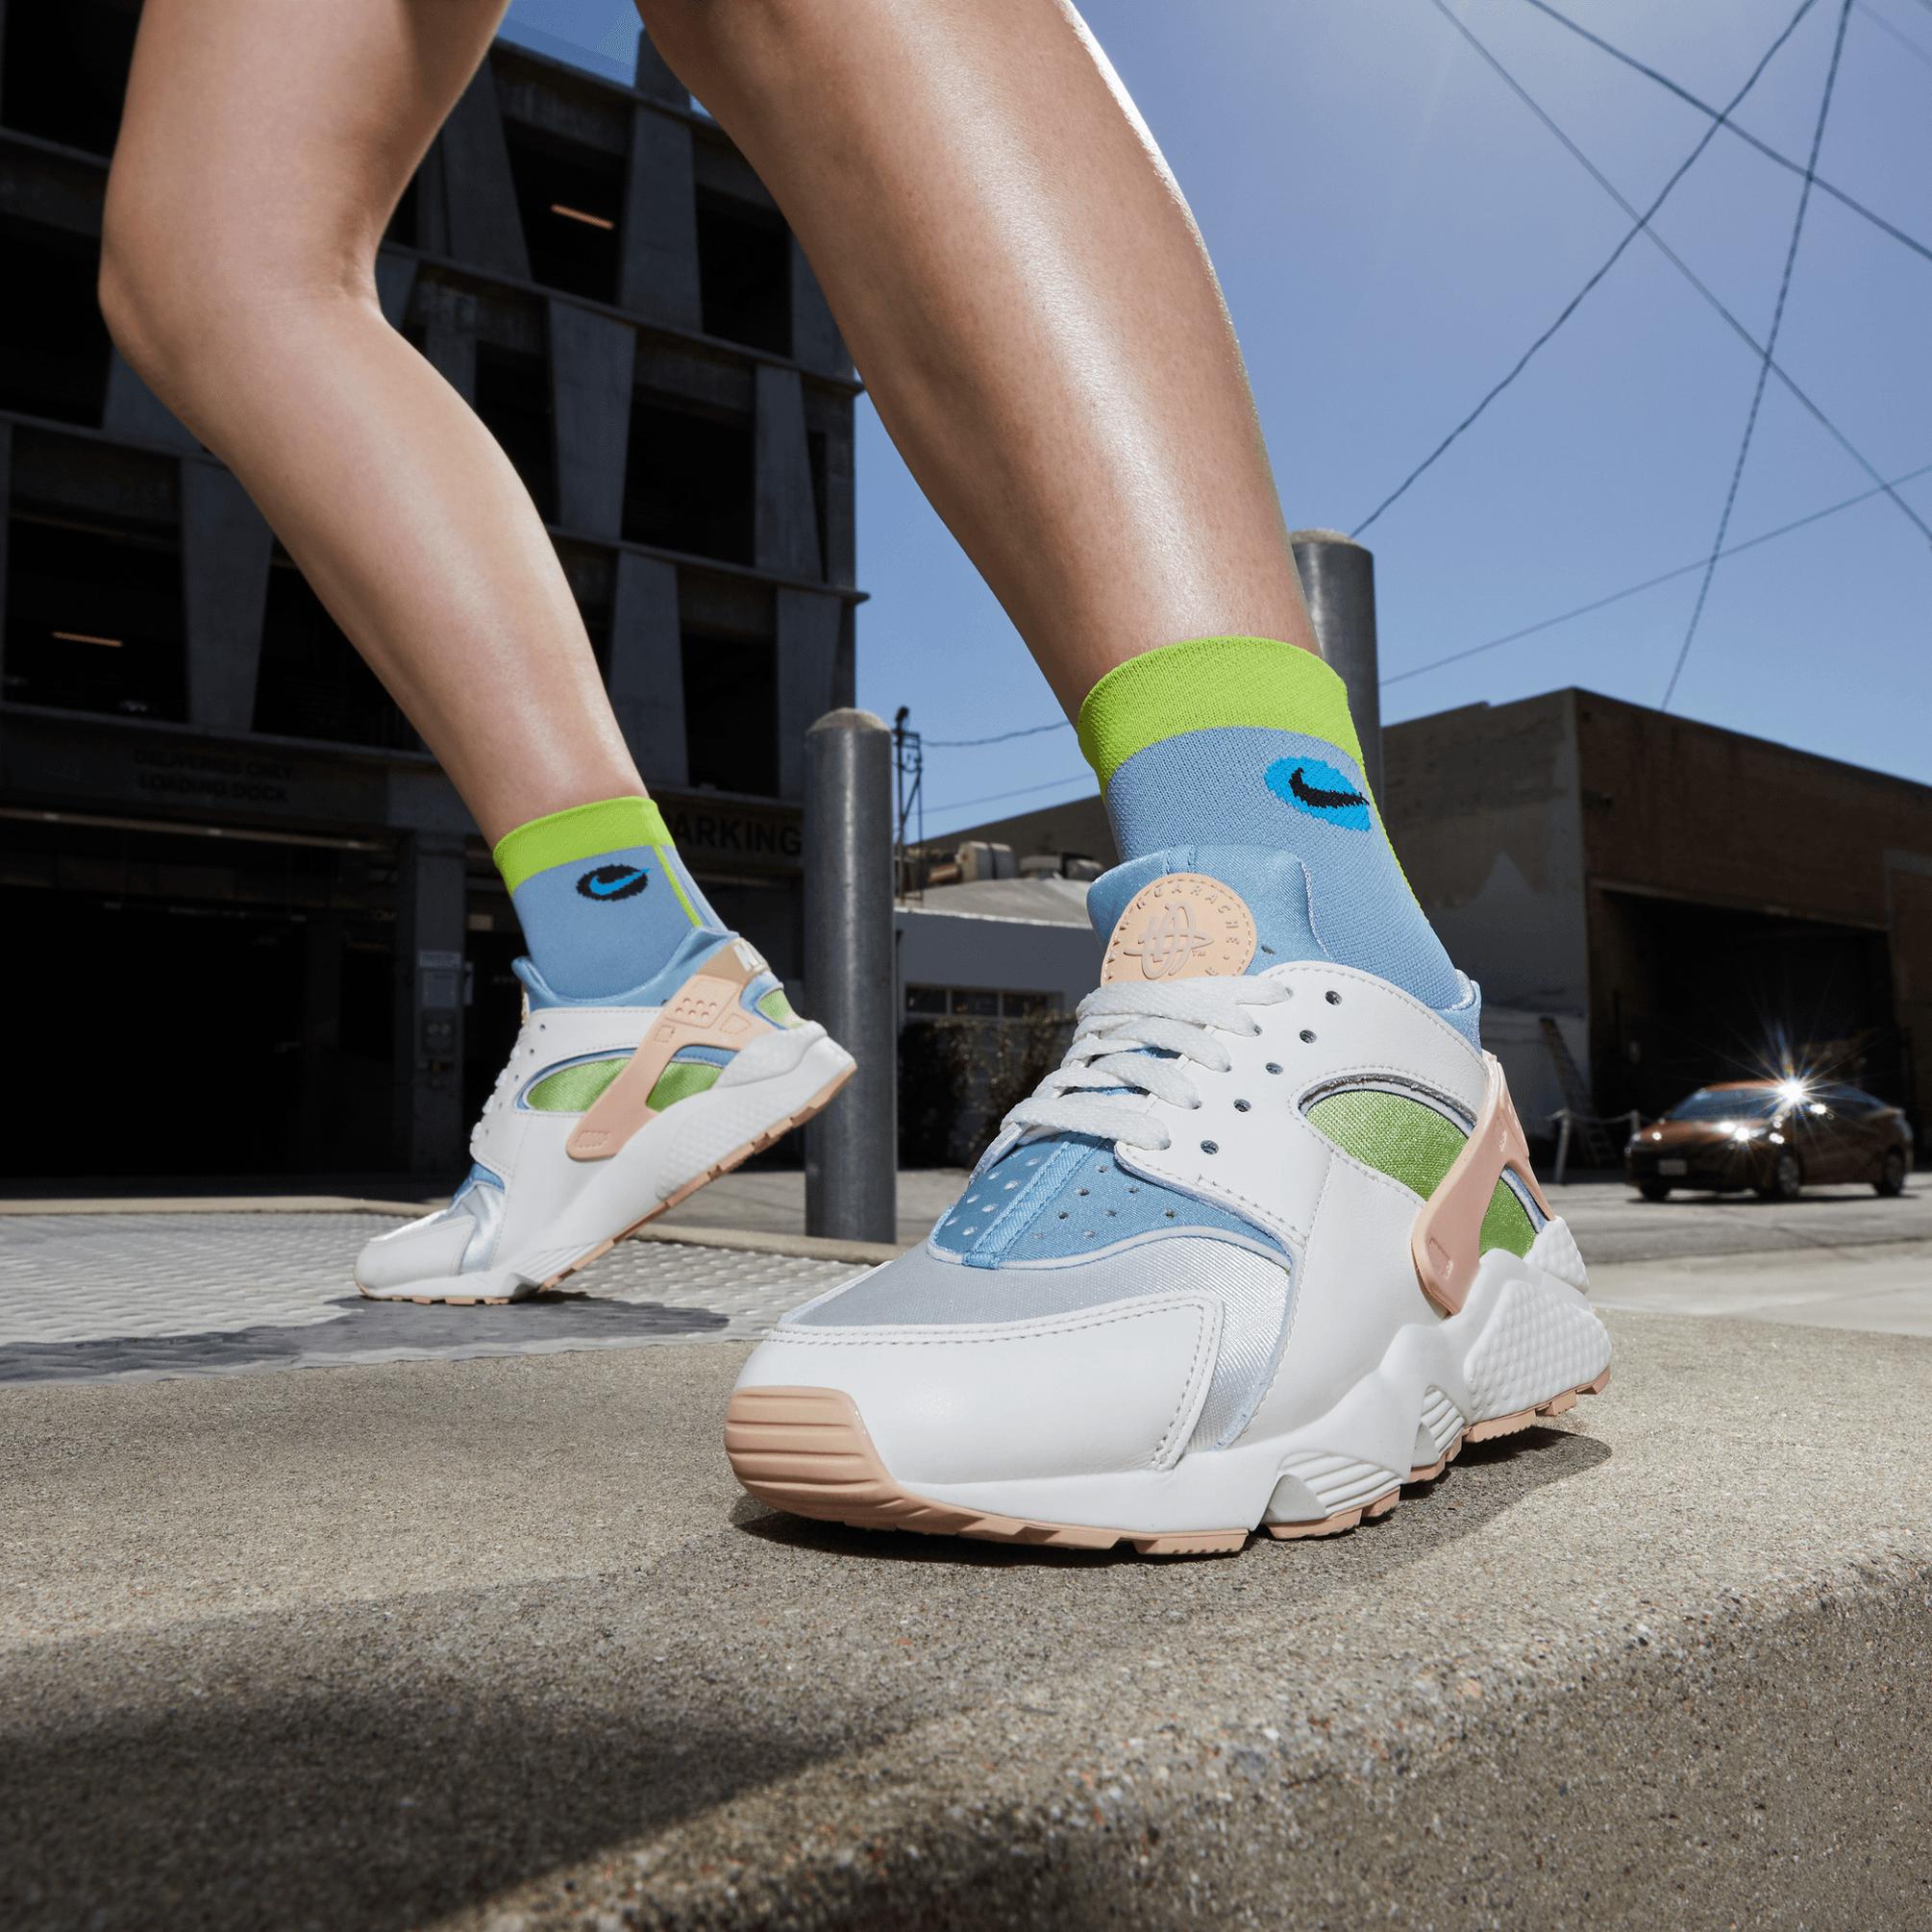  Nike Air Huarache SE Kadın Beyaz Spor Ayakkabı